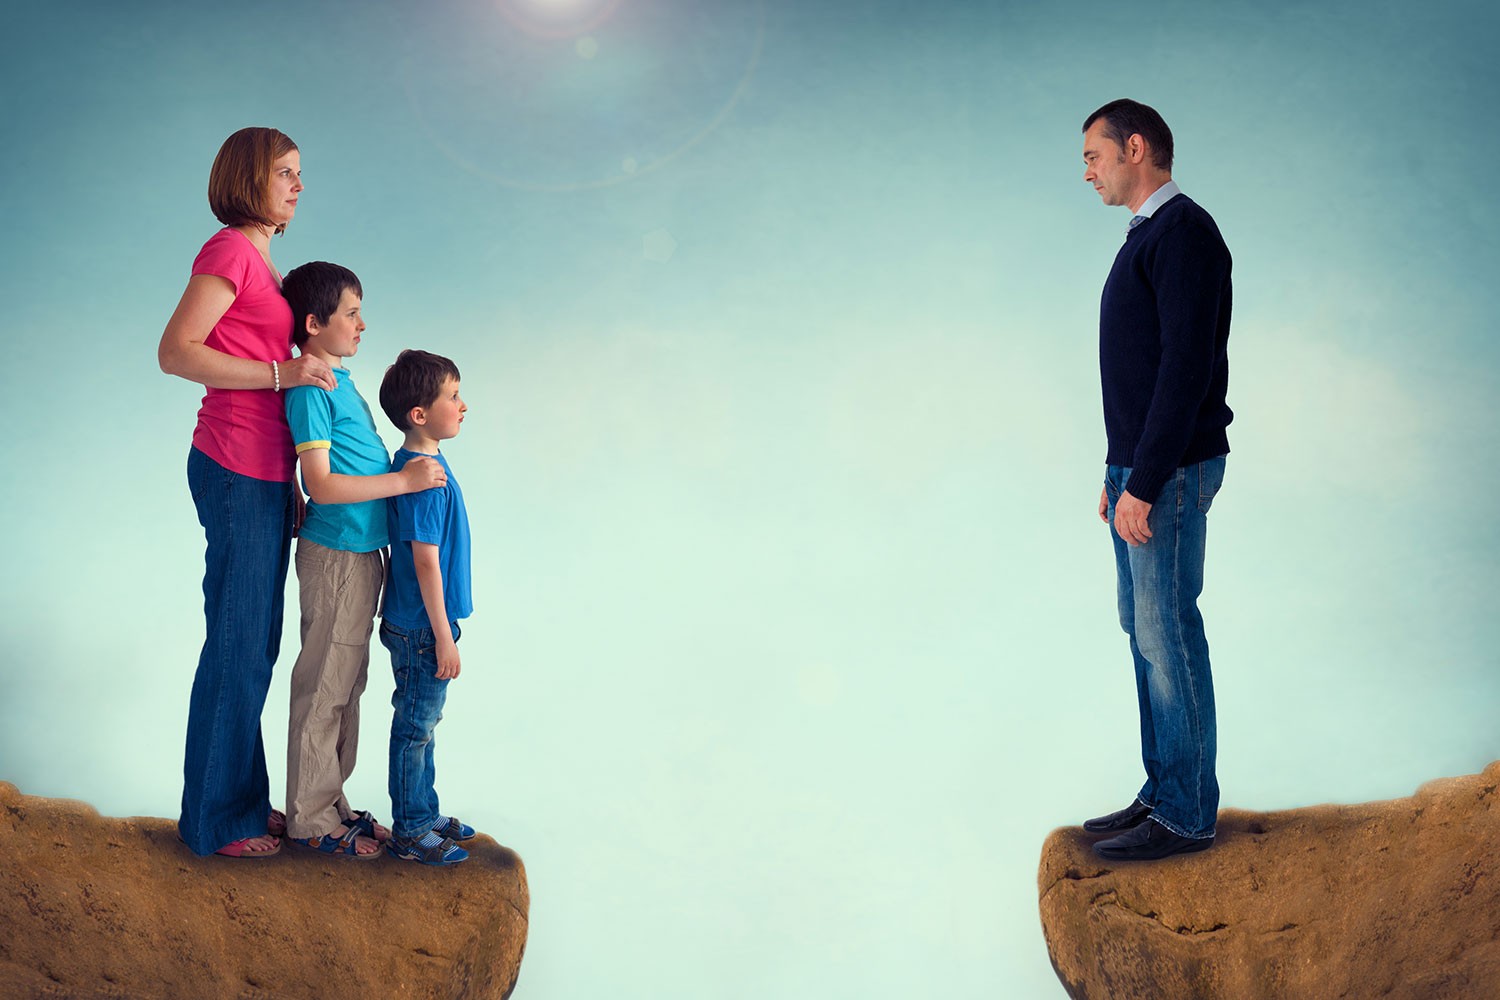 child visitation parents divorce separation legal advice